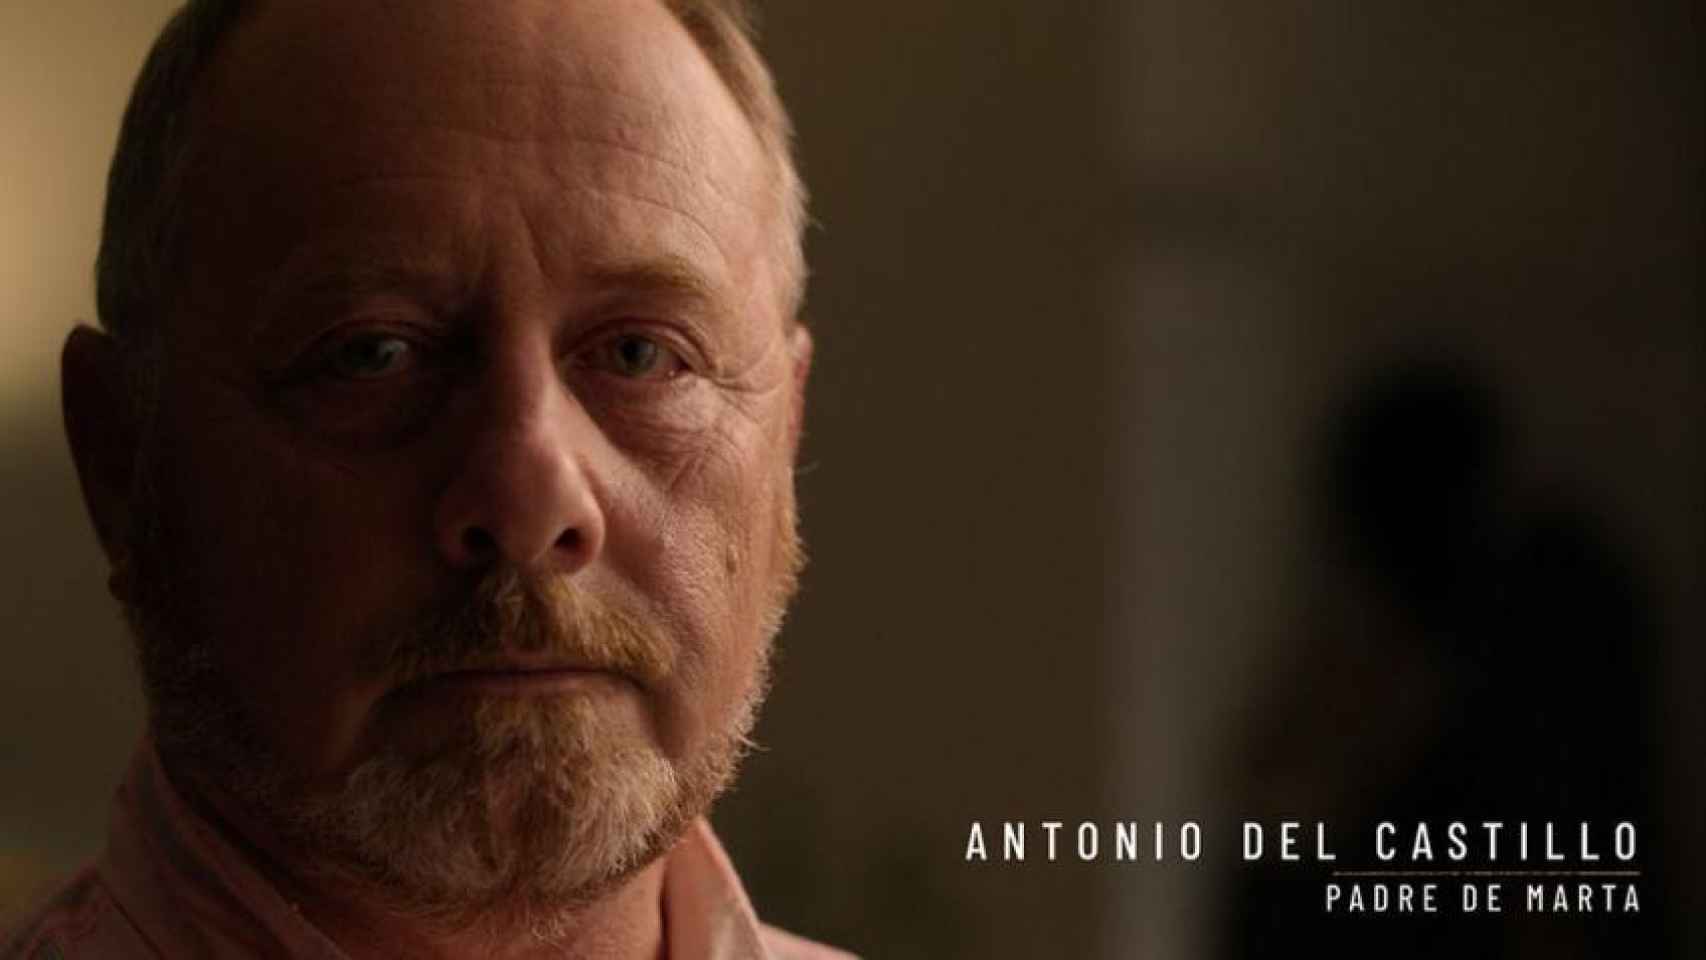 Imagen del padre de Marta del Castillo durante el documental de Netflix.